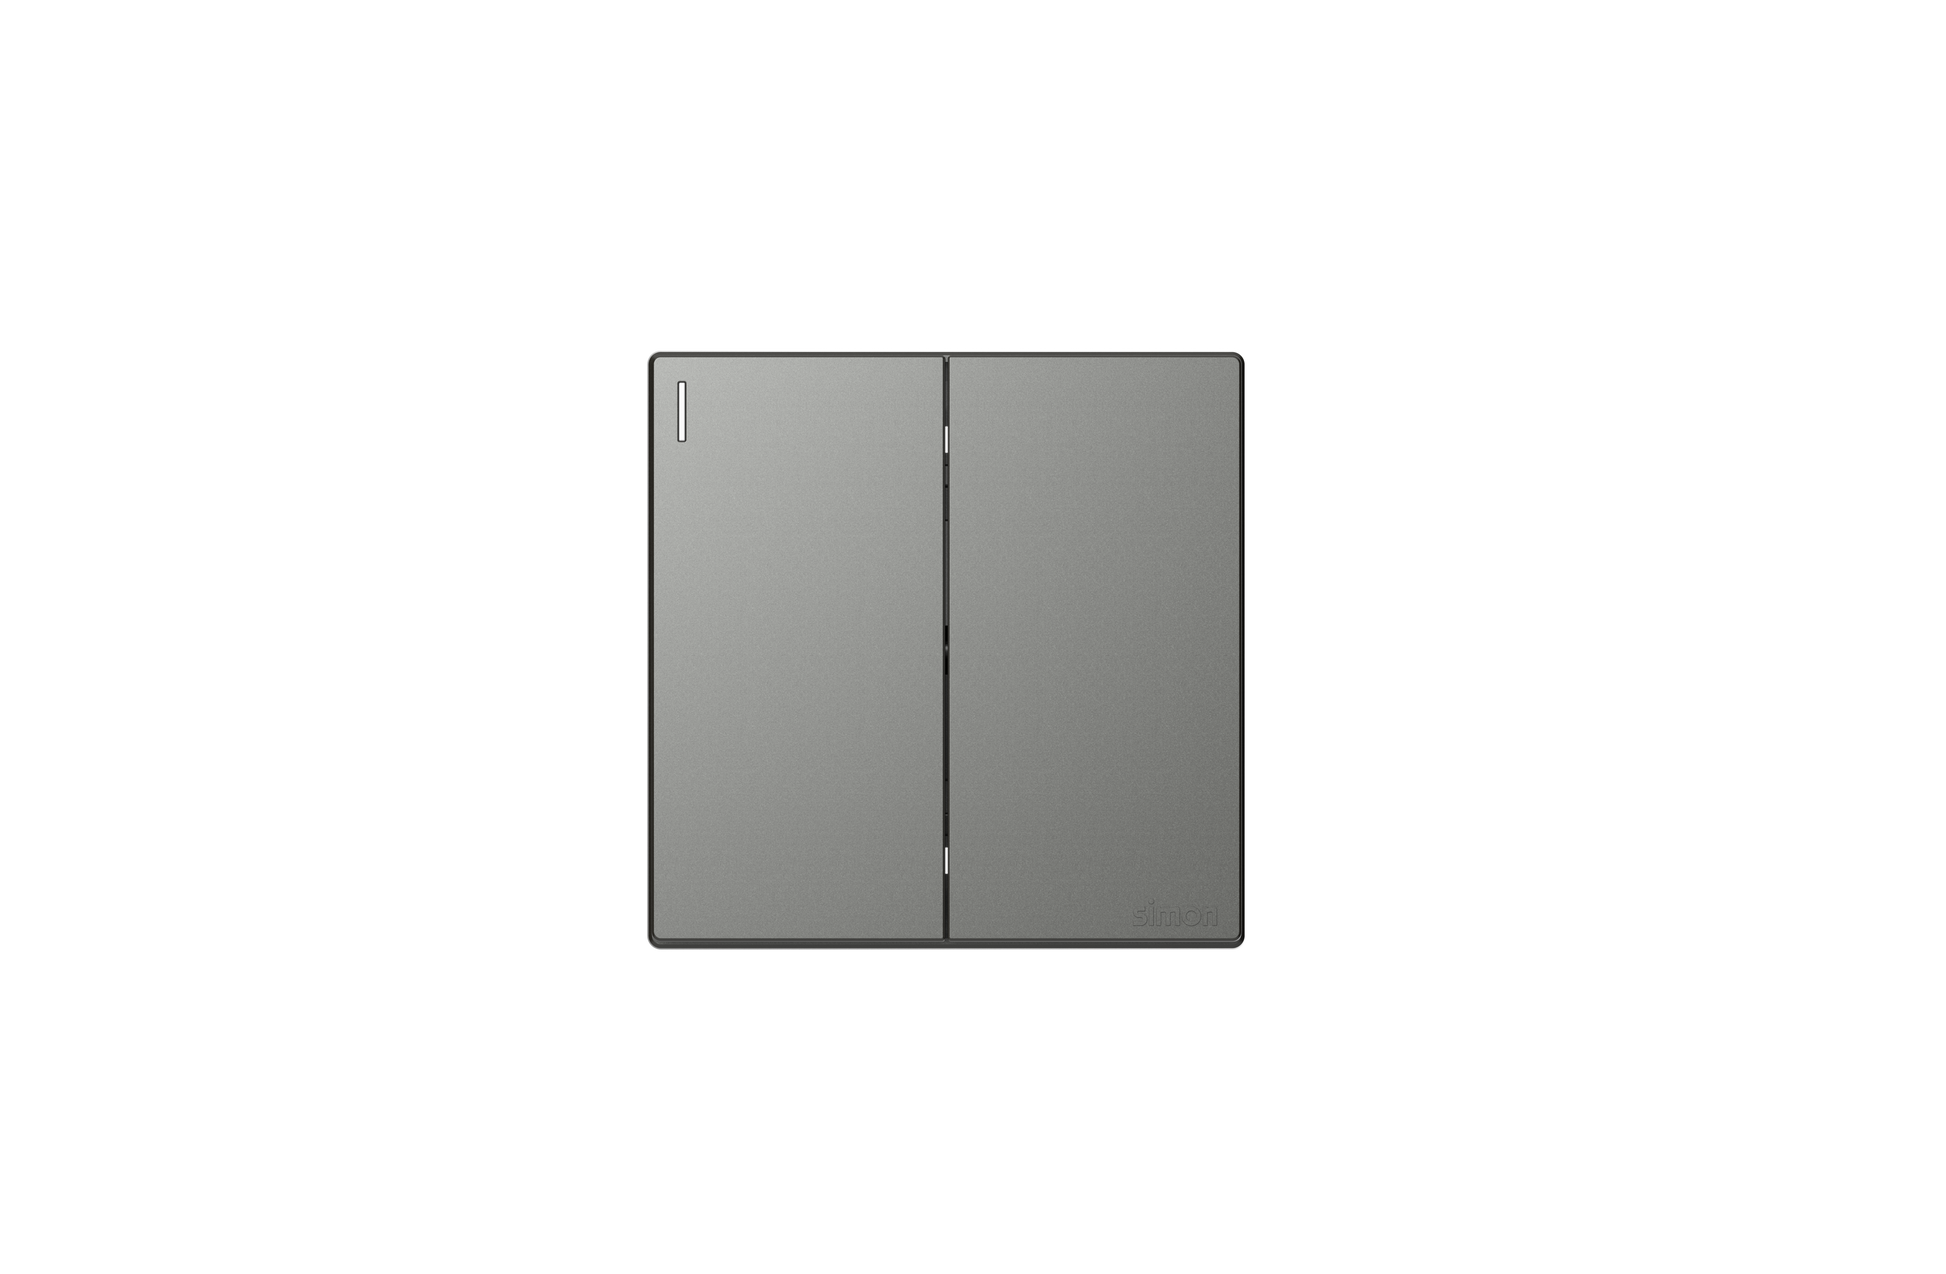 Bộ Công tắc đôi, 1 chiều mặt vuông màu xám (Grey) cao cấp Simon S6 581021-61